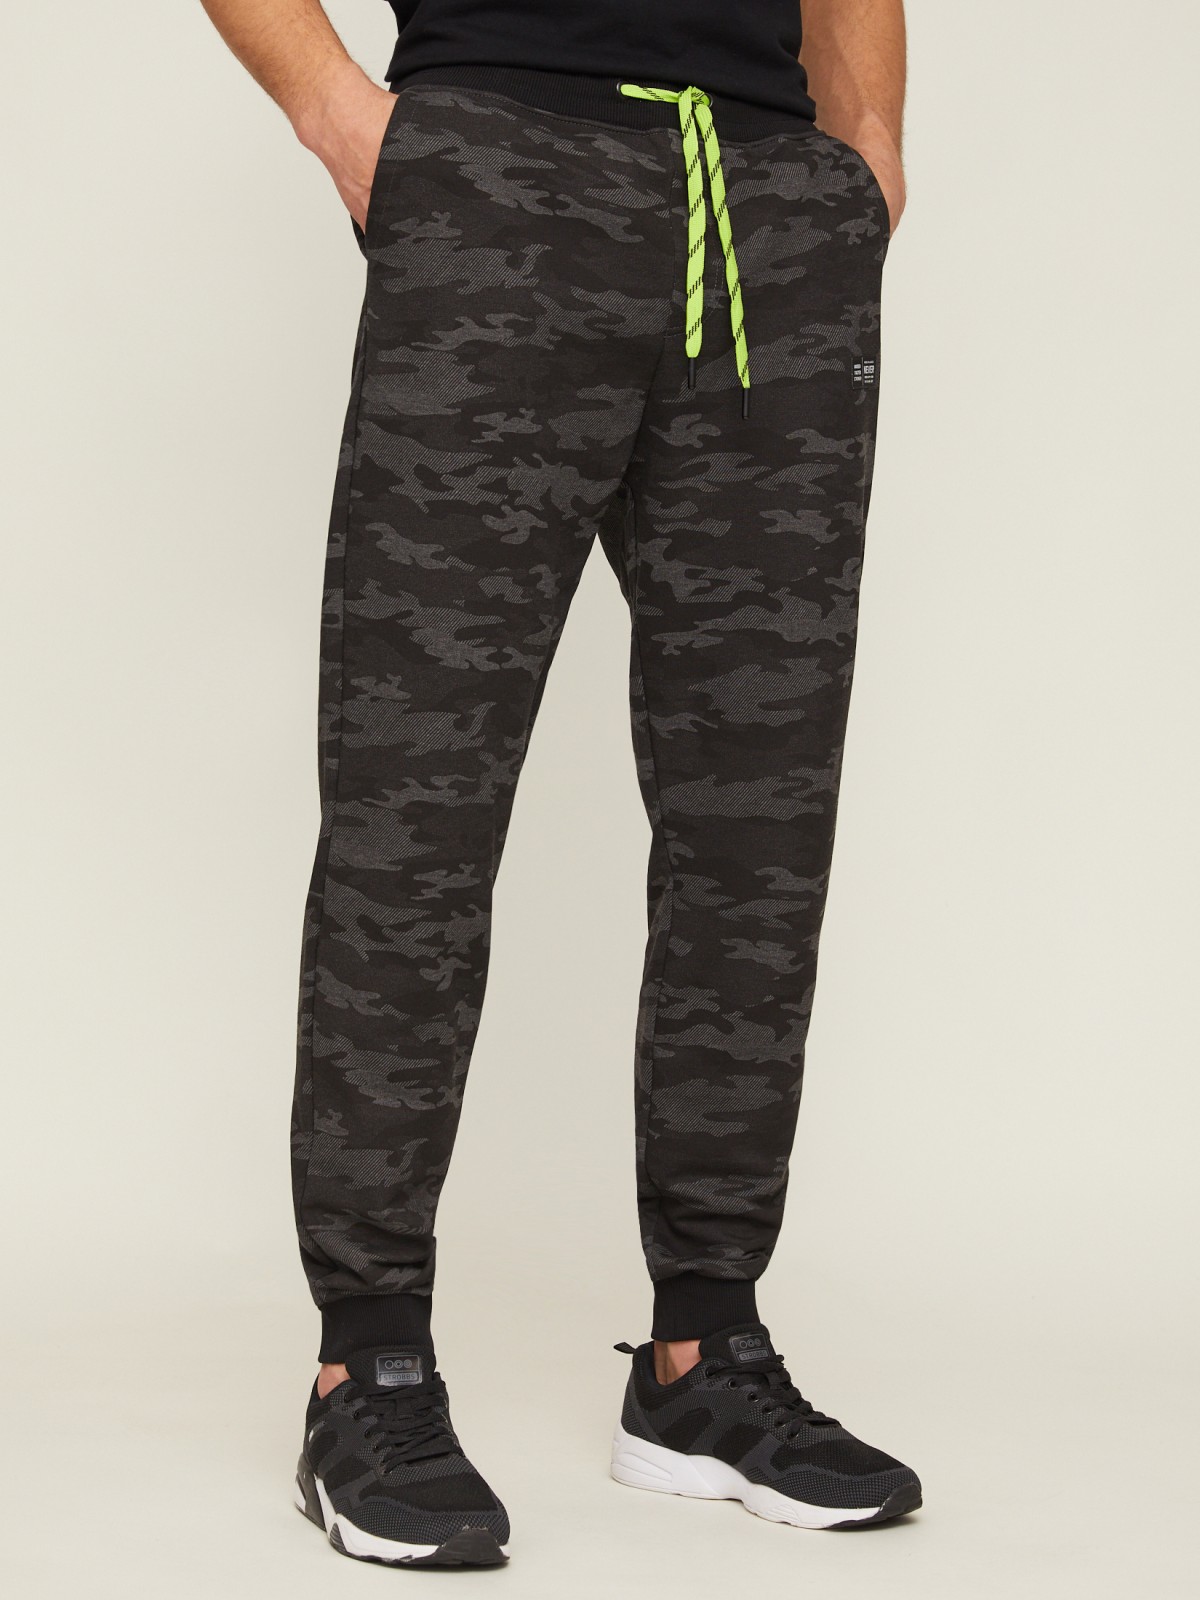 Трикотажные брюки-джоггеры с камуфляжным принтом zolla 21313761U033, цвет темно-серый, размер M - фото 4